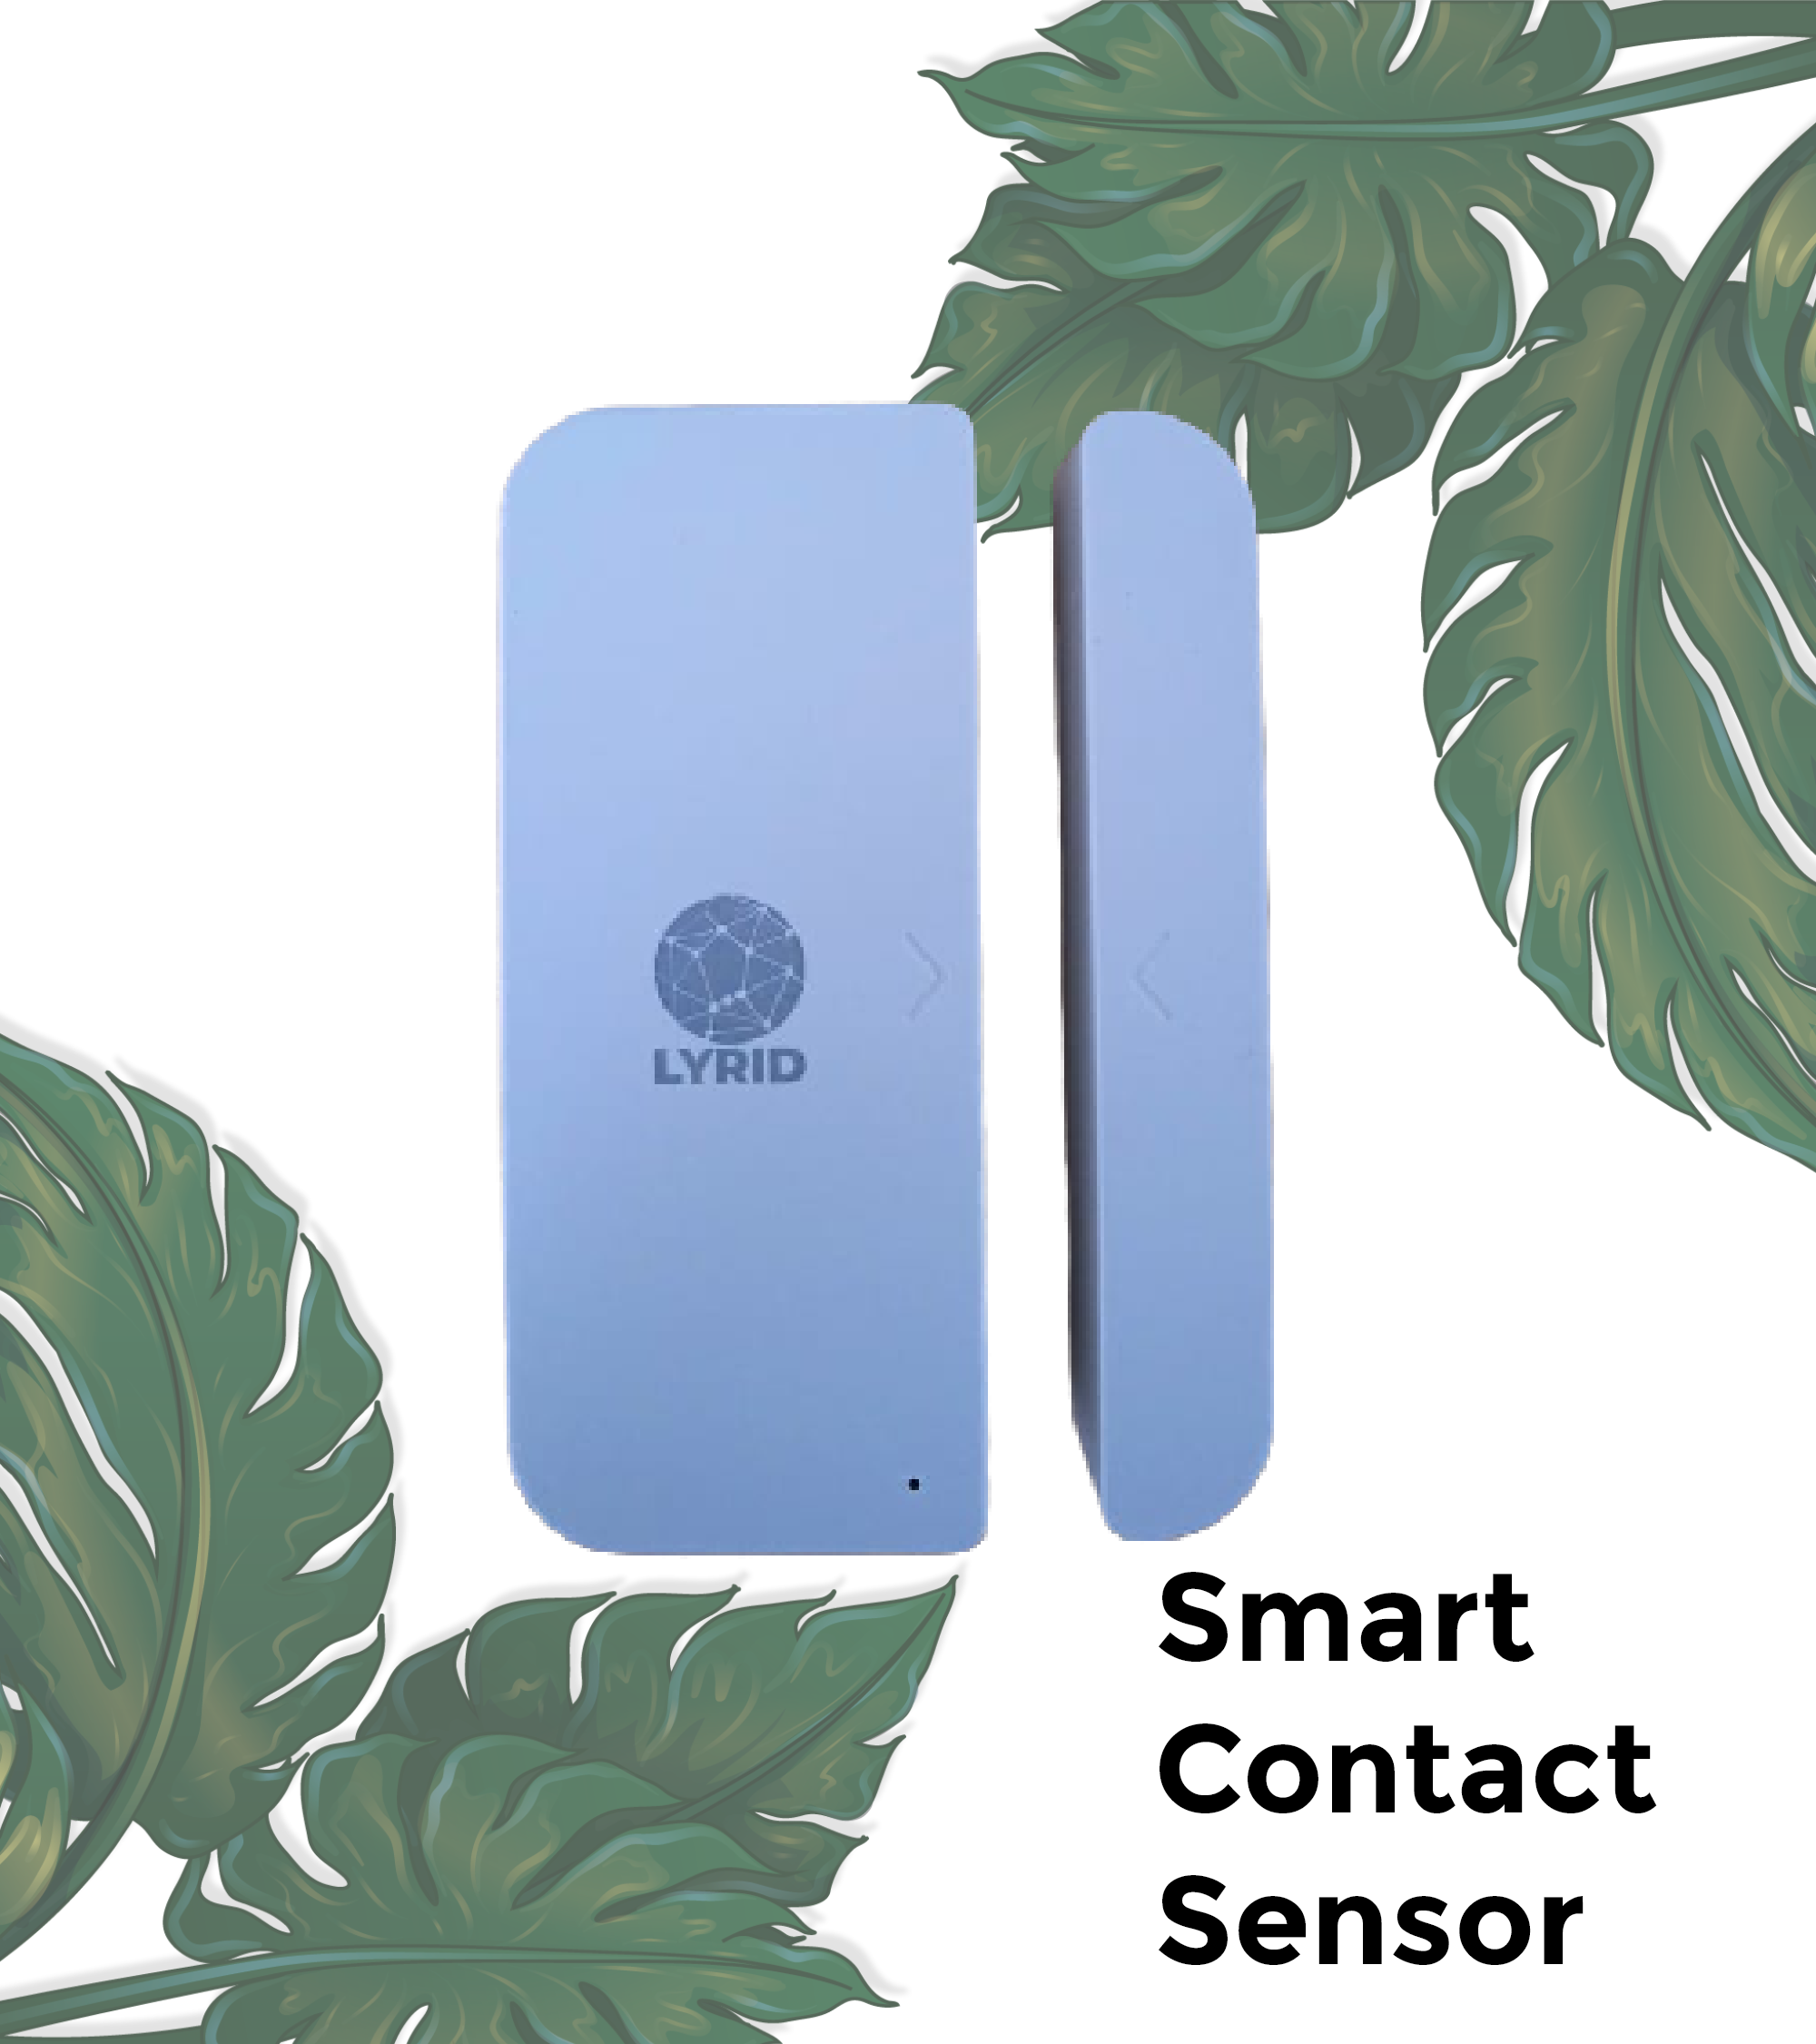 Smart Contact Sensor